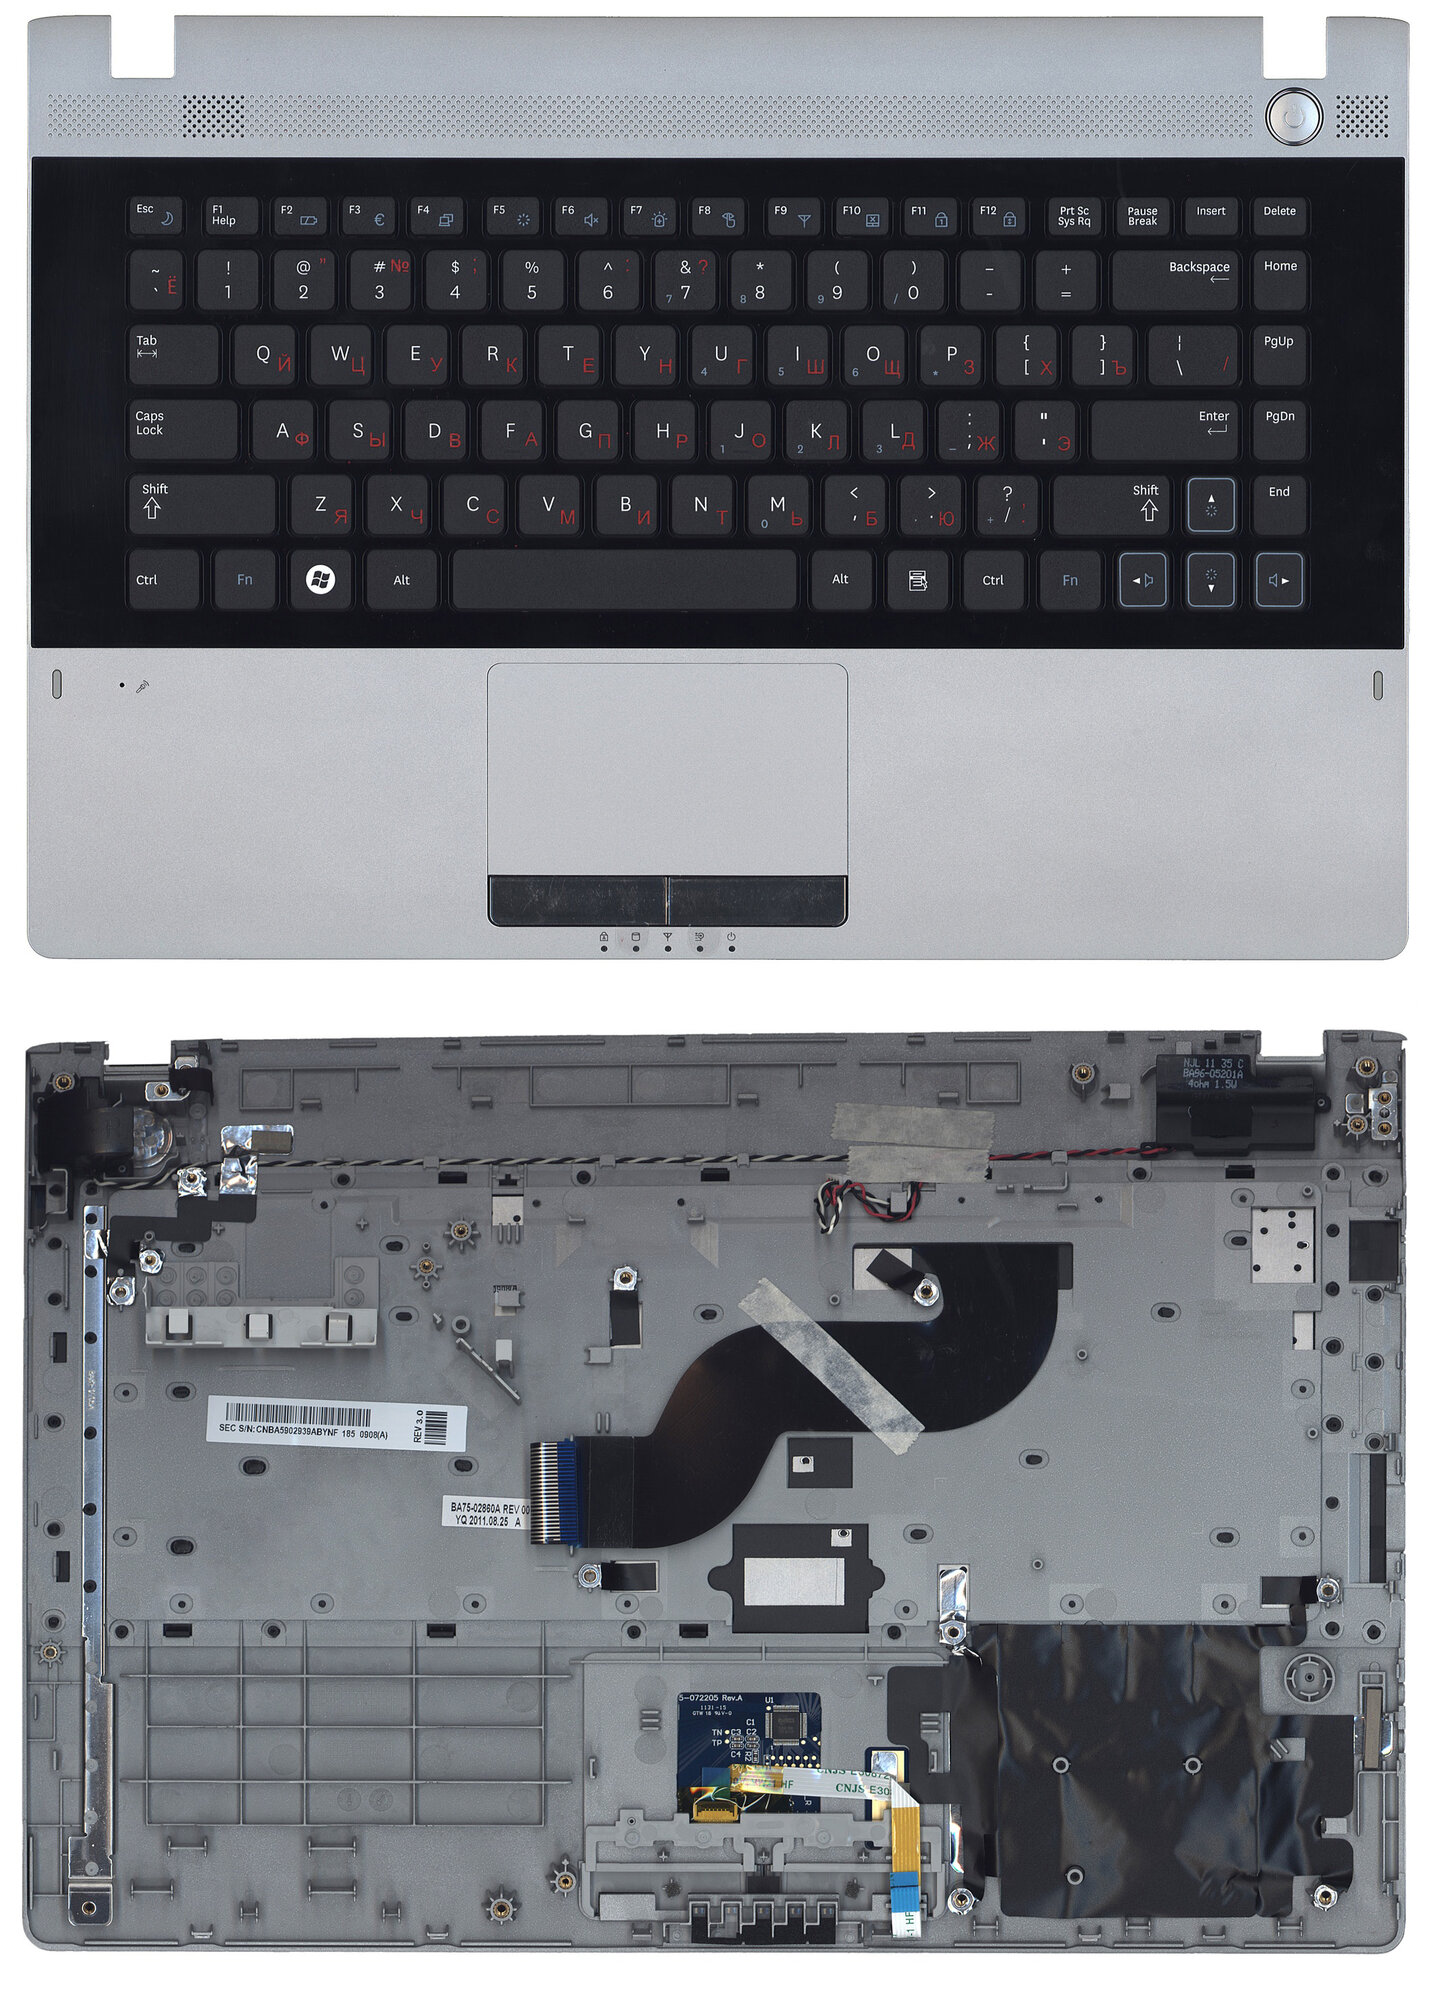 Клавиатура для Samsumg BA59-02939A серая топ-панель